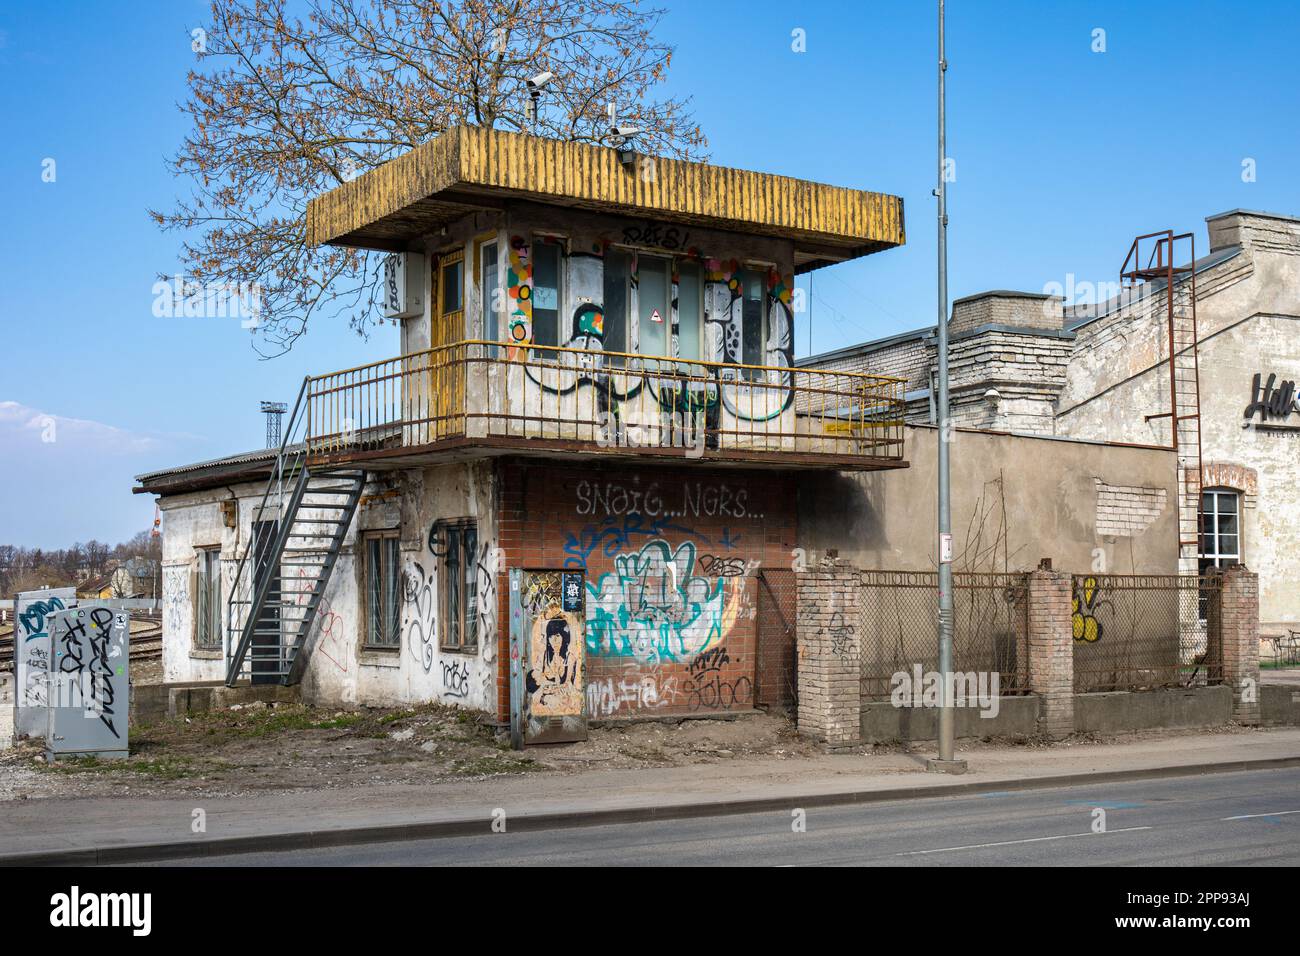 Ein alter sowjetischer Kontrollturm oder eine Signalbox am Bahnübergang im Stadtteil Telliskivi in Tallinn, Estland Stockfoto